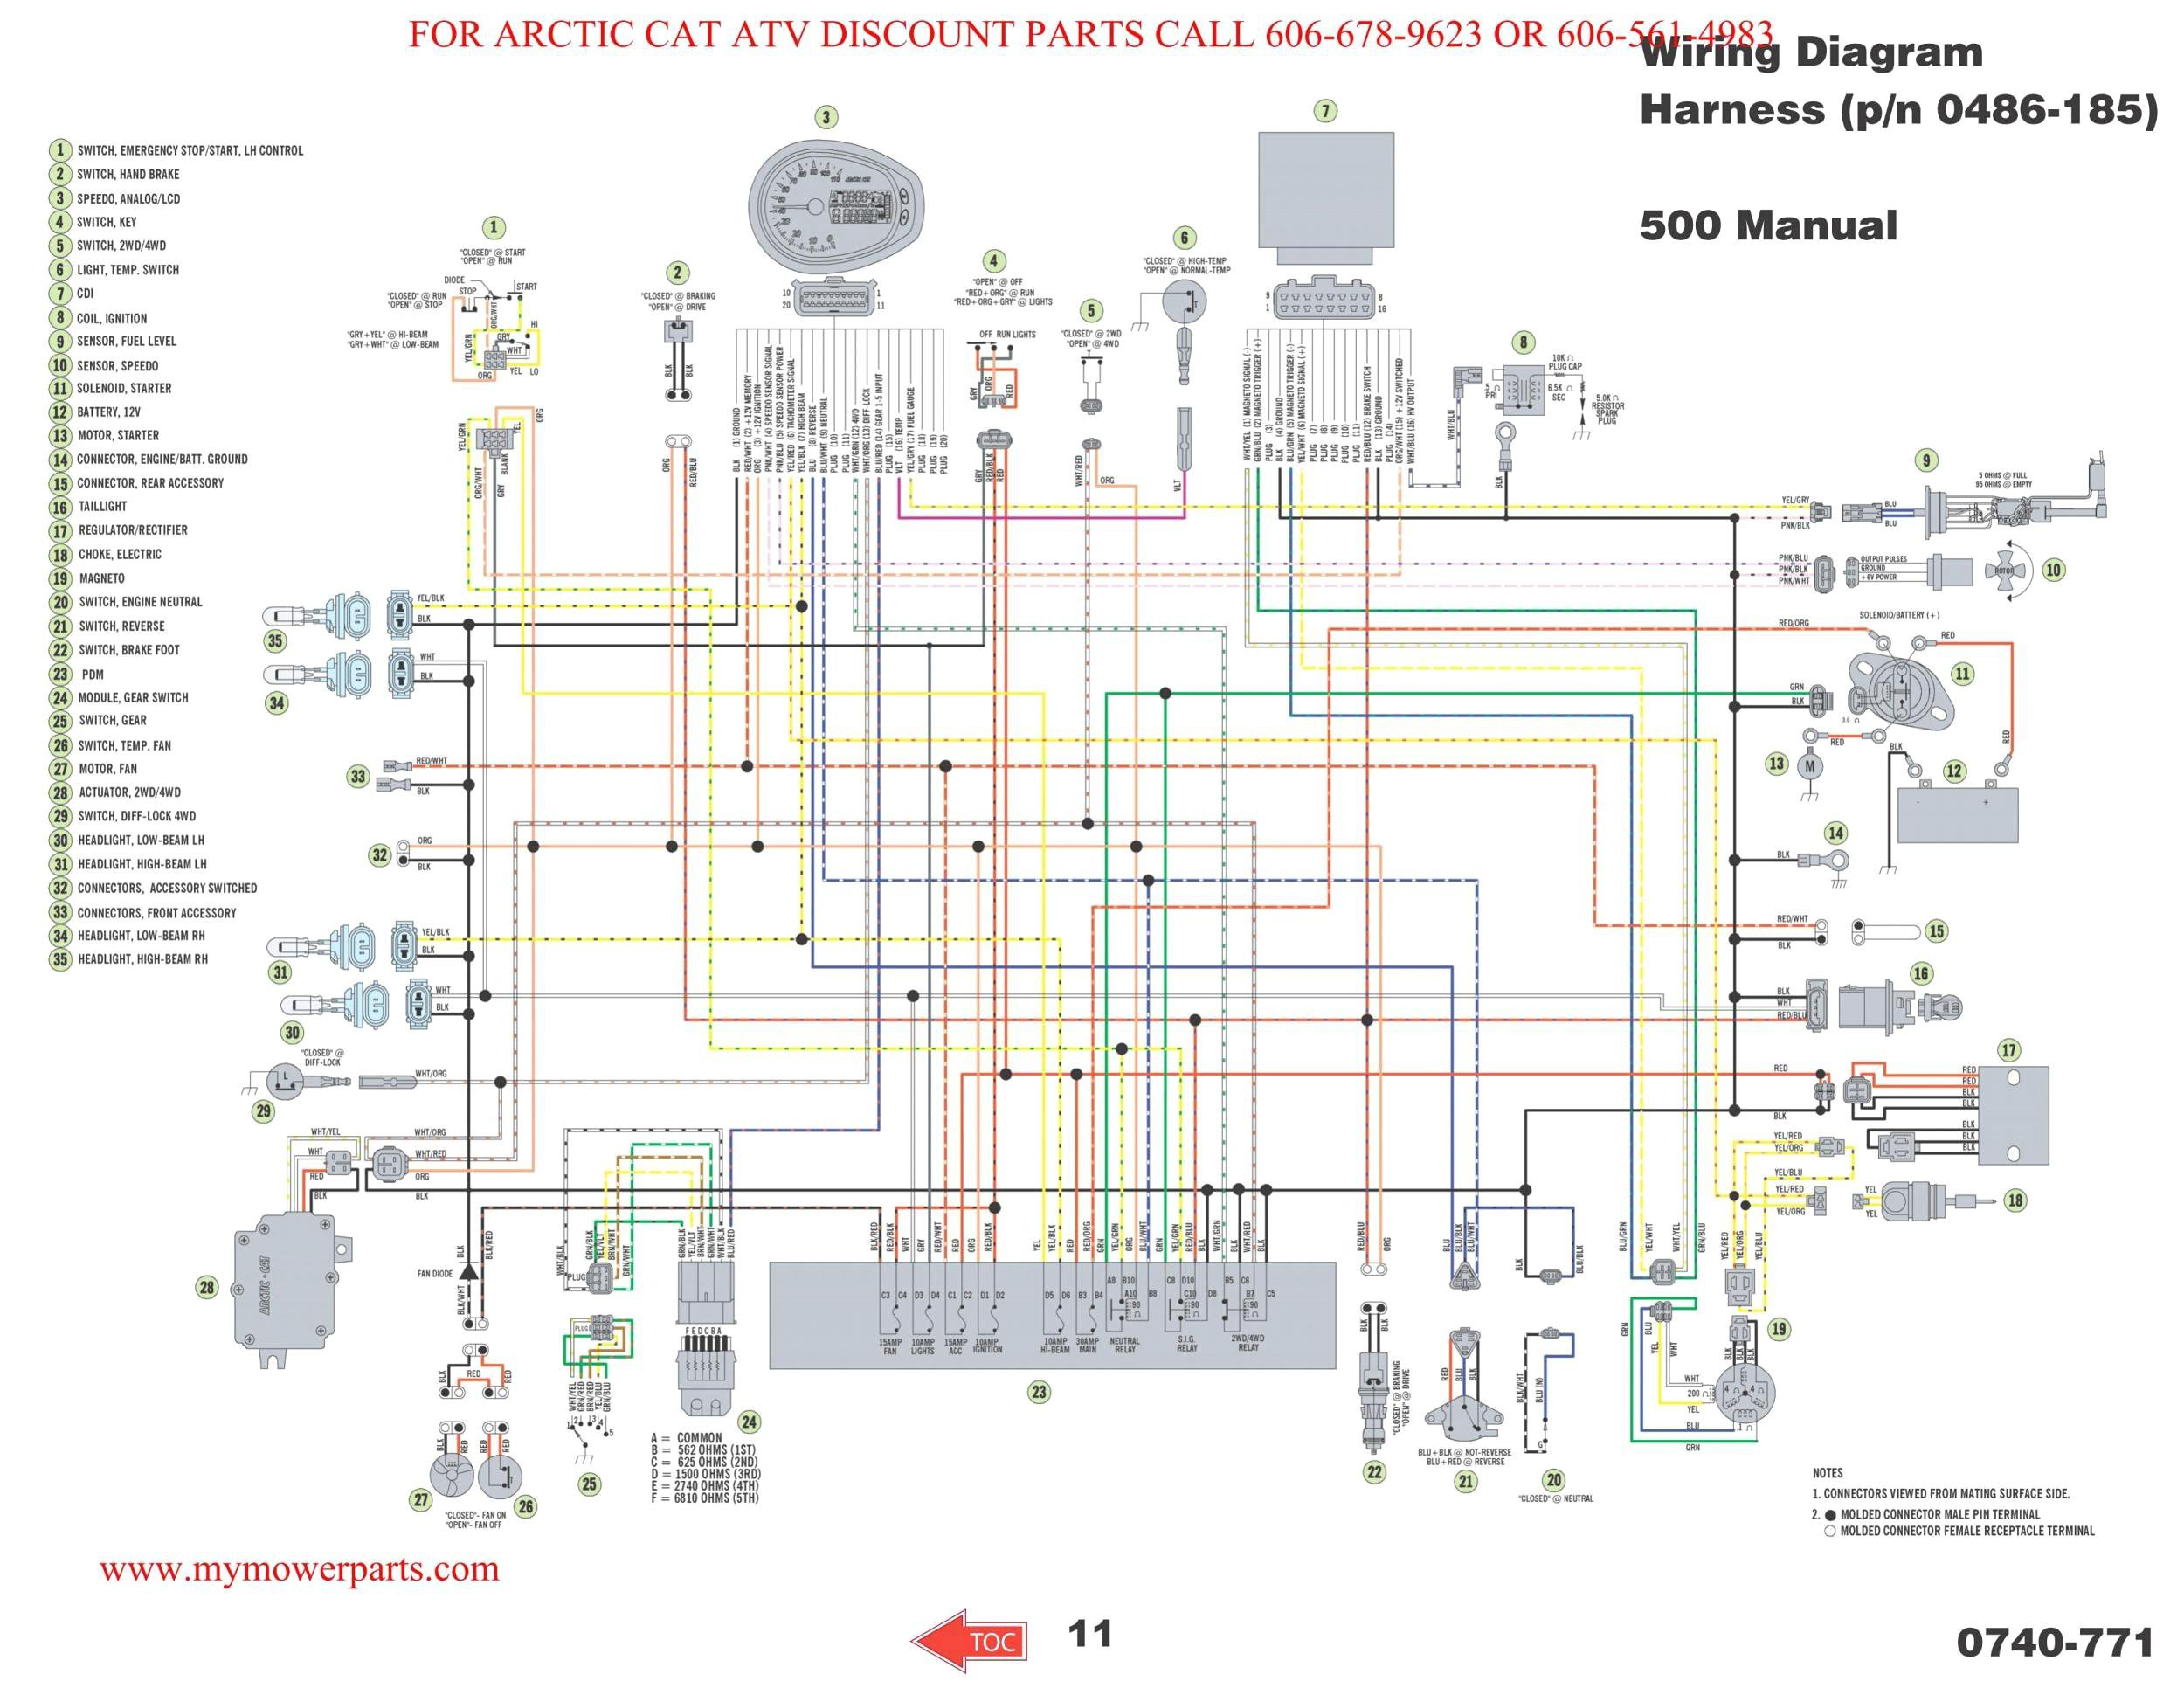 Wiring Diagram For 2003 Arctic Cat 400 Fis Atv